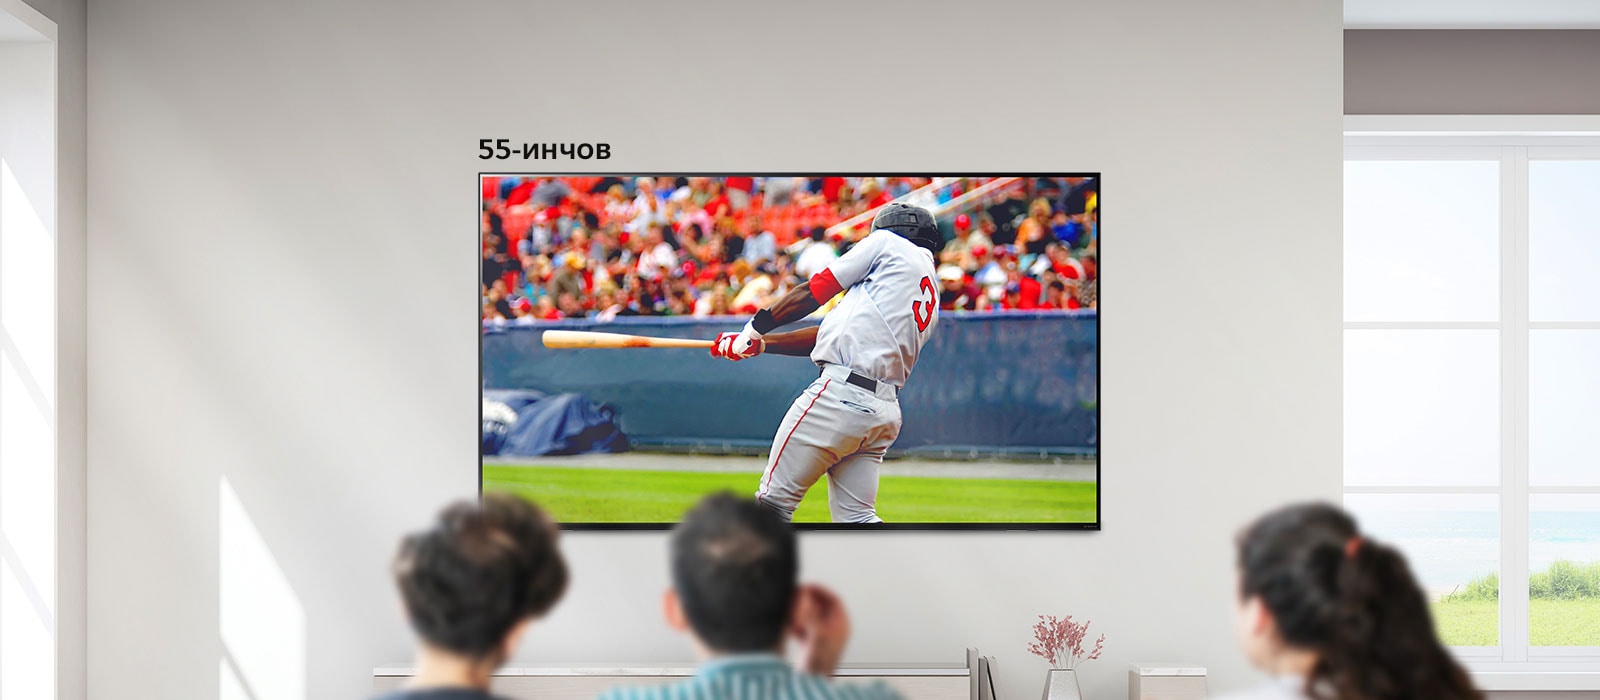 Изображение с възможност за превъртане на трима души, които гледат бейзбол на голям телевизор, монтиран на стената. При превъртане от ляво надясно екранът става по-голям.